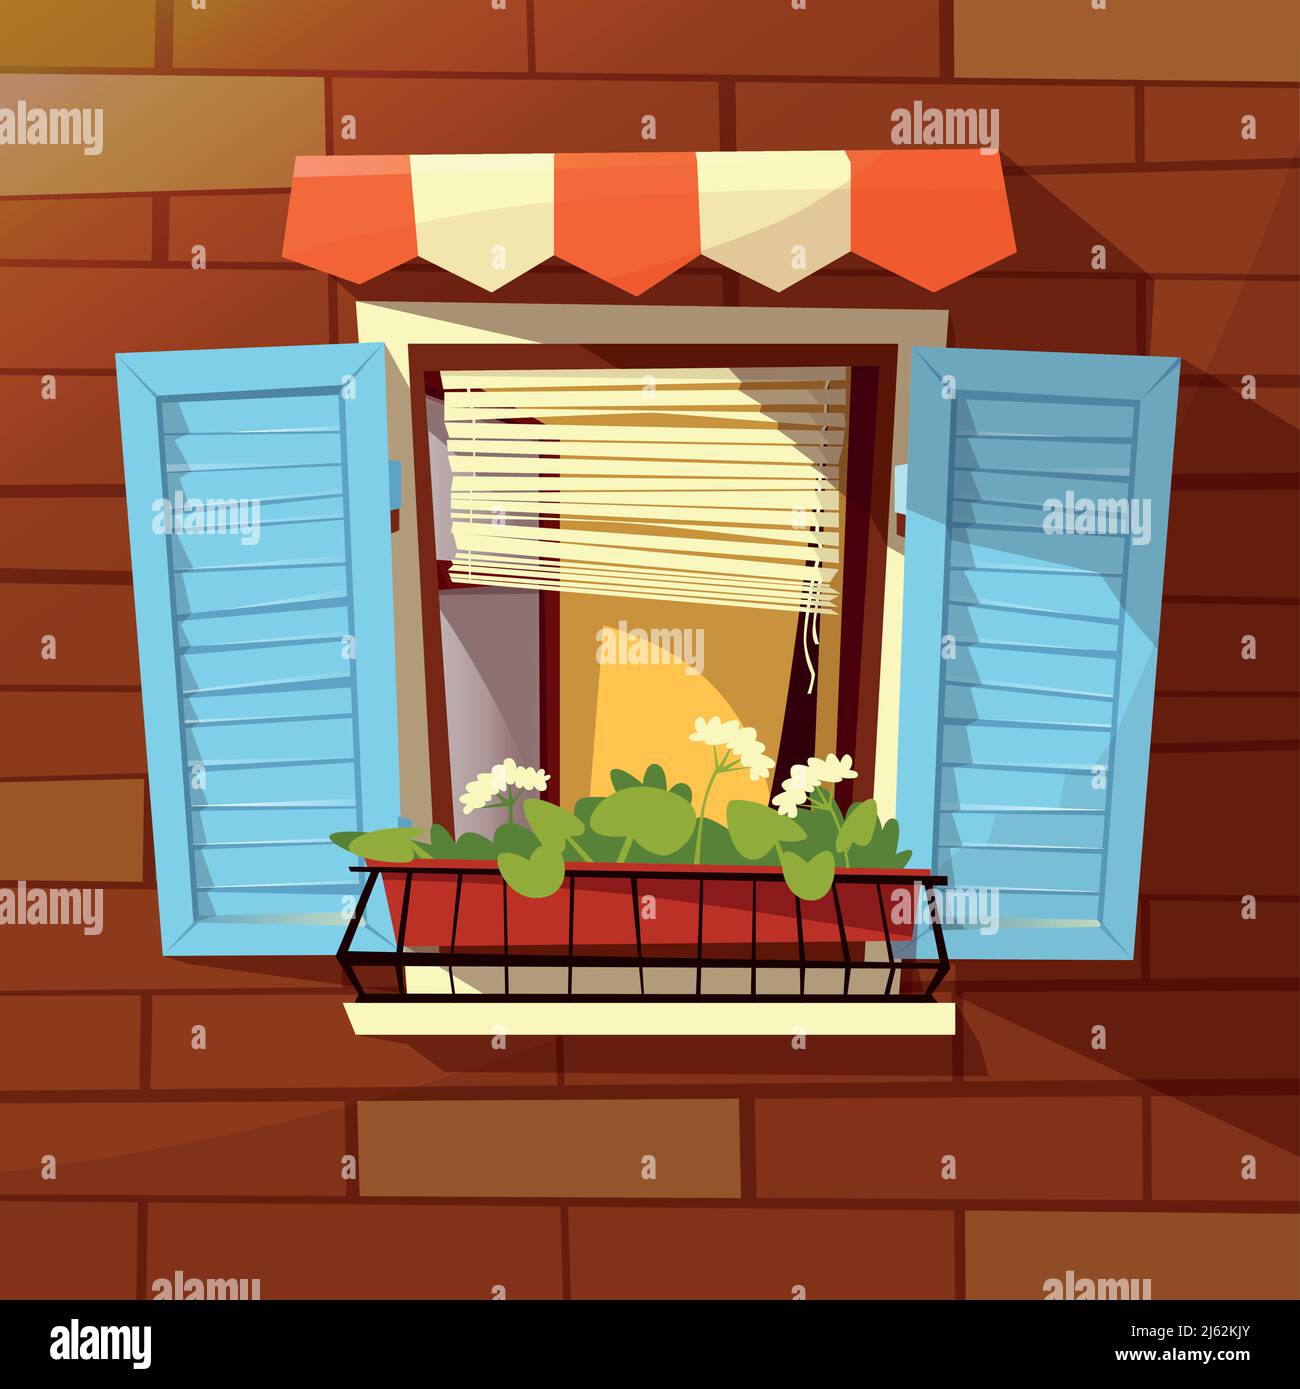 Façade de maison illustration vectorielle de fenêtre avec volets en bois, auvent de store et pot de fleurs. Façade de fenêtre moderne ou rétro sur un mur de briques outdoo Illustration de Vecteur